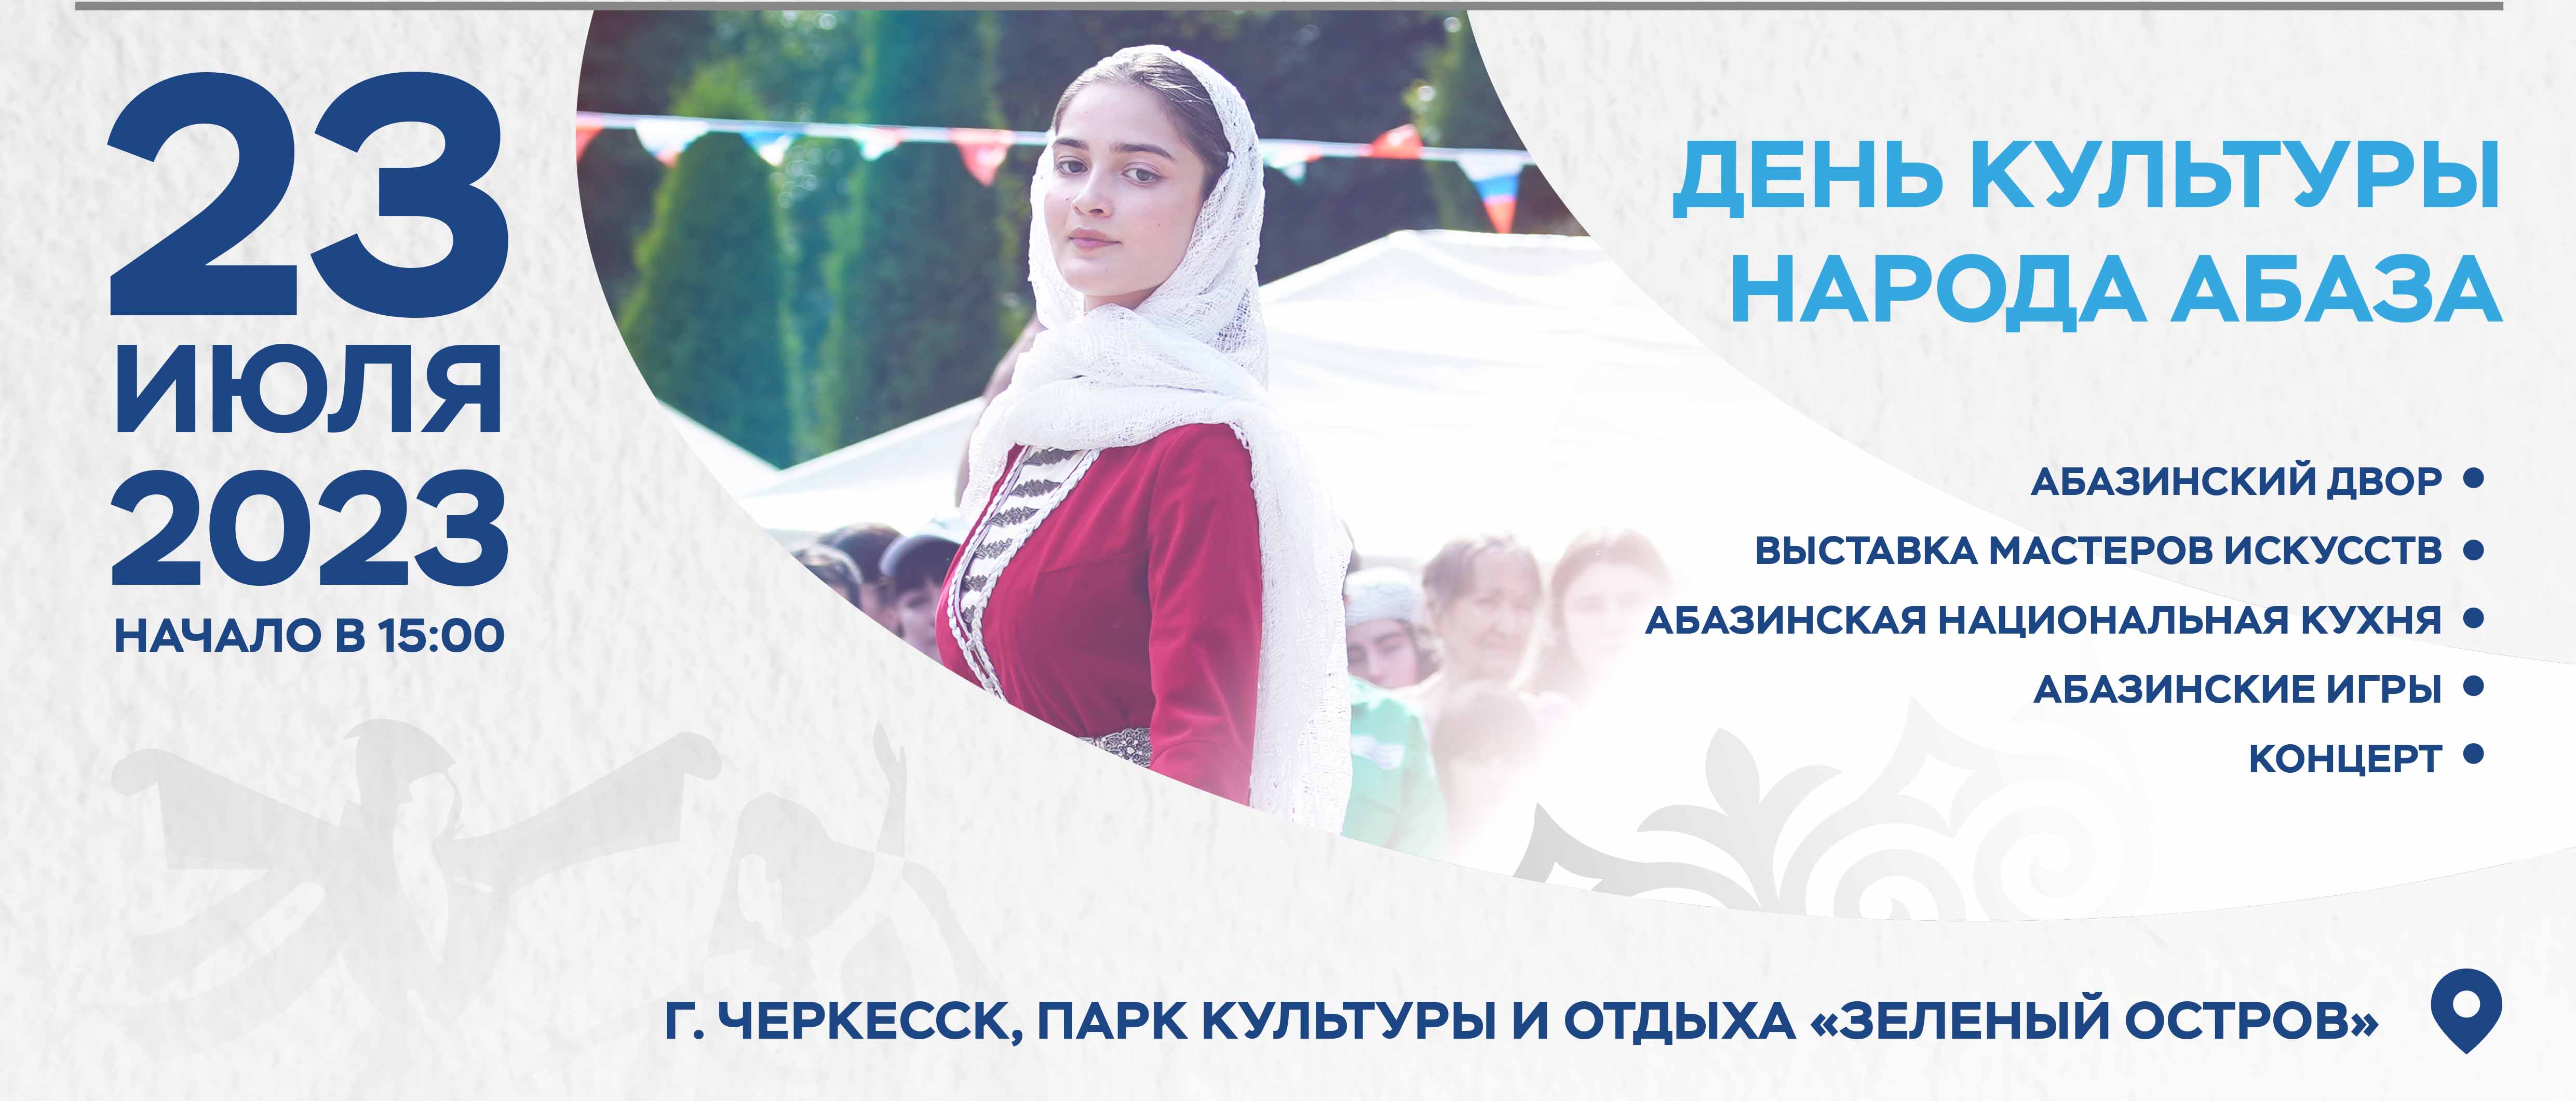 В Карачаево-Черкесии пройдёт День культуры народа Абаза